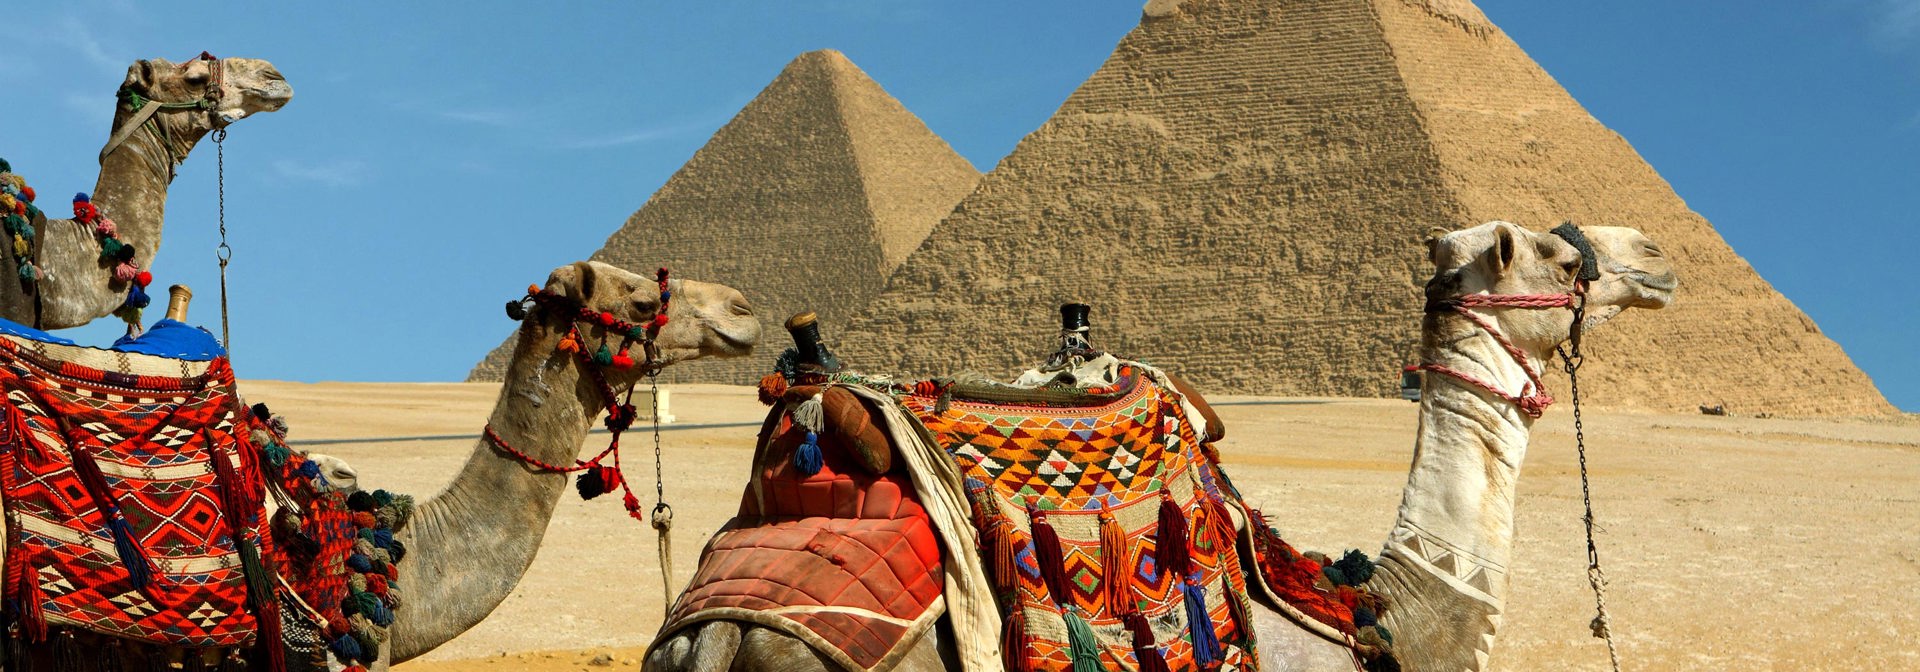 egypten - kameler pyramider